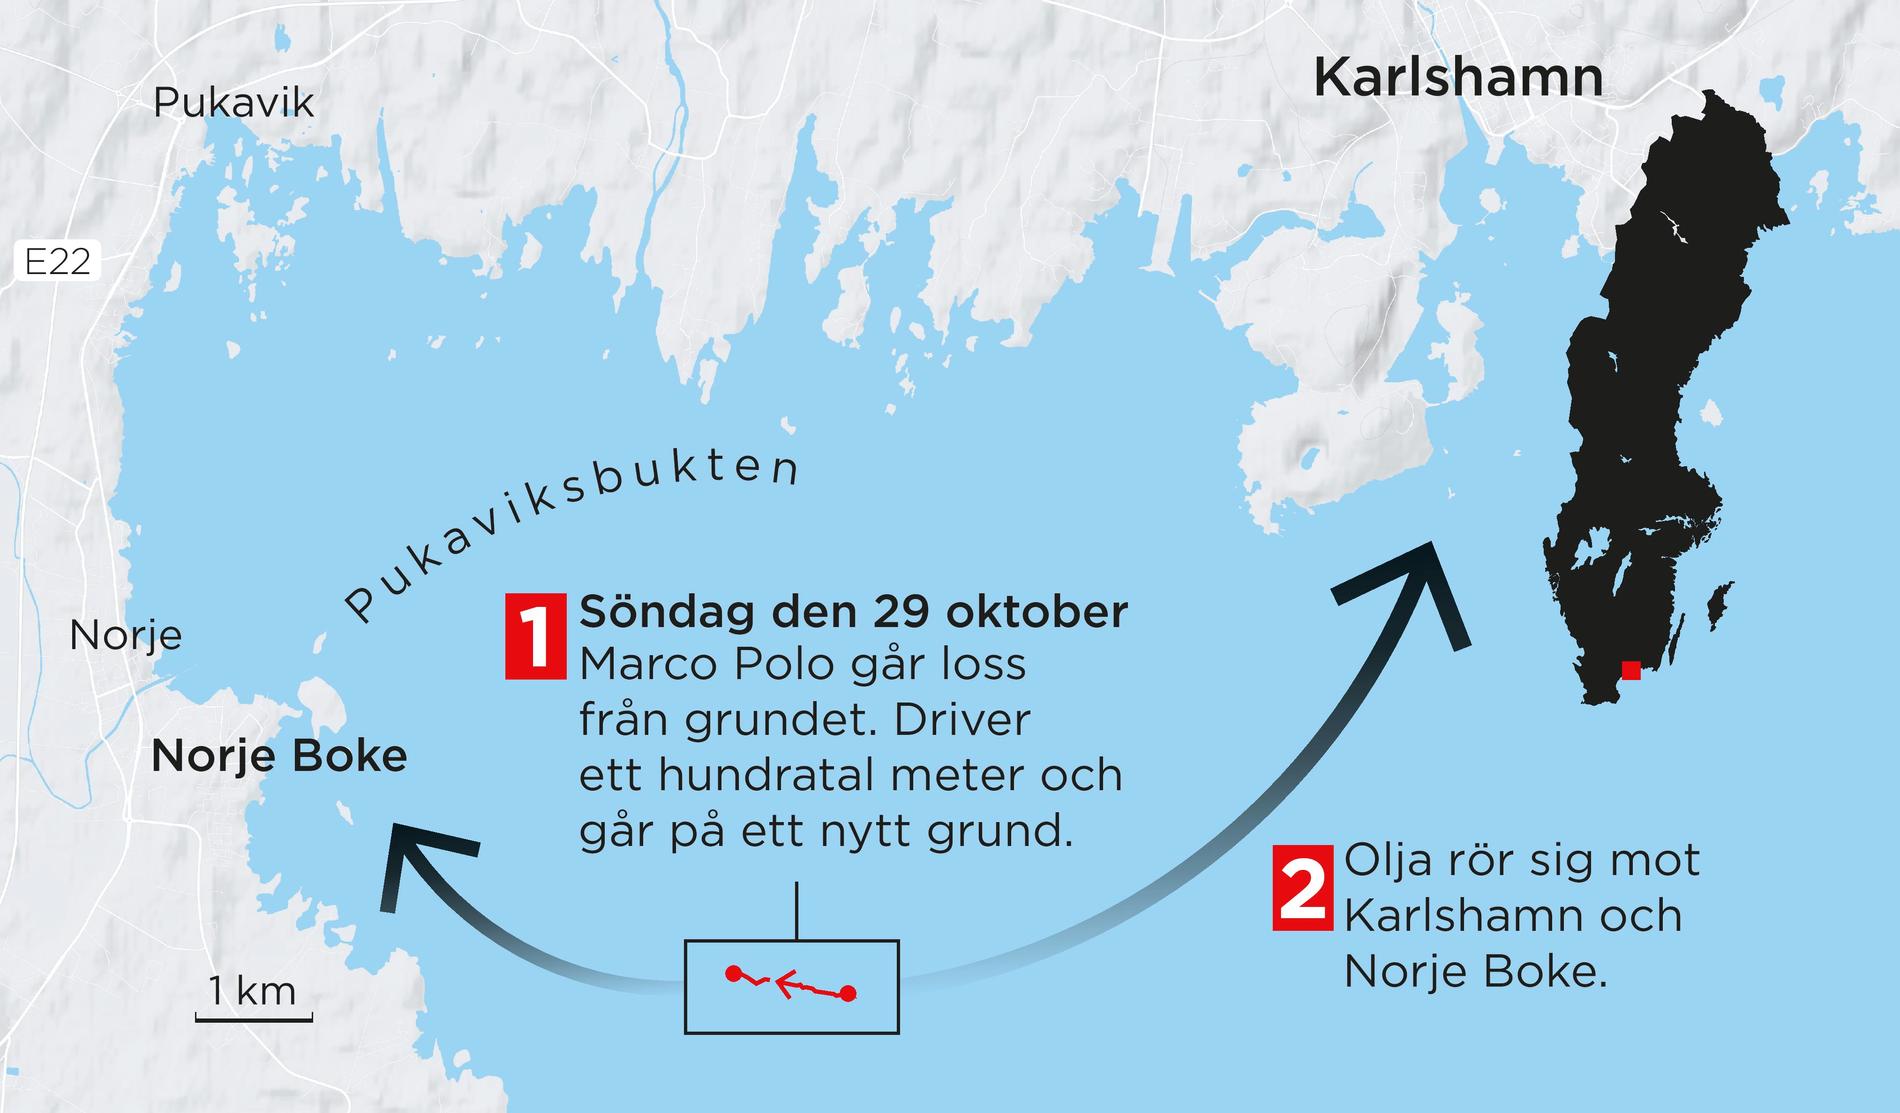 En ny oljeläcka har uppstått från det grundstötta fartyget. Enligt Kustbevakningens prognos rör sig oljan mot Karlshamn.